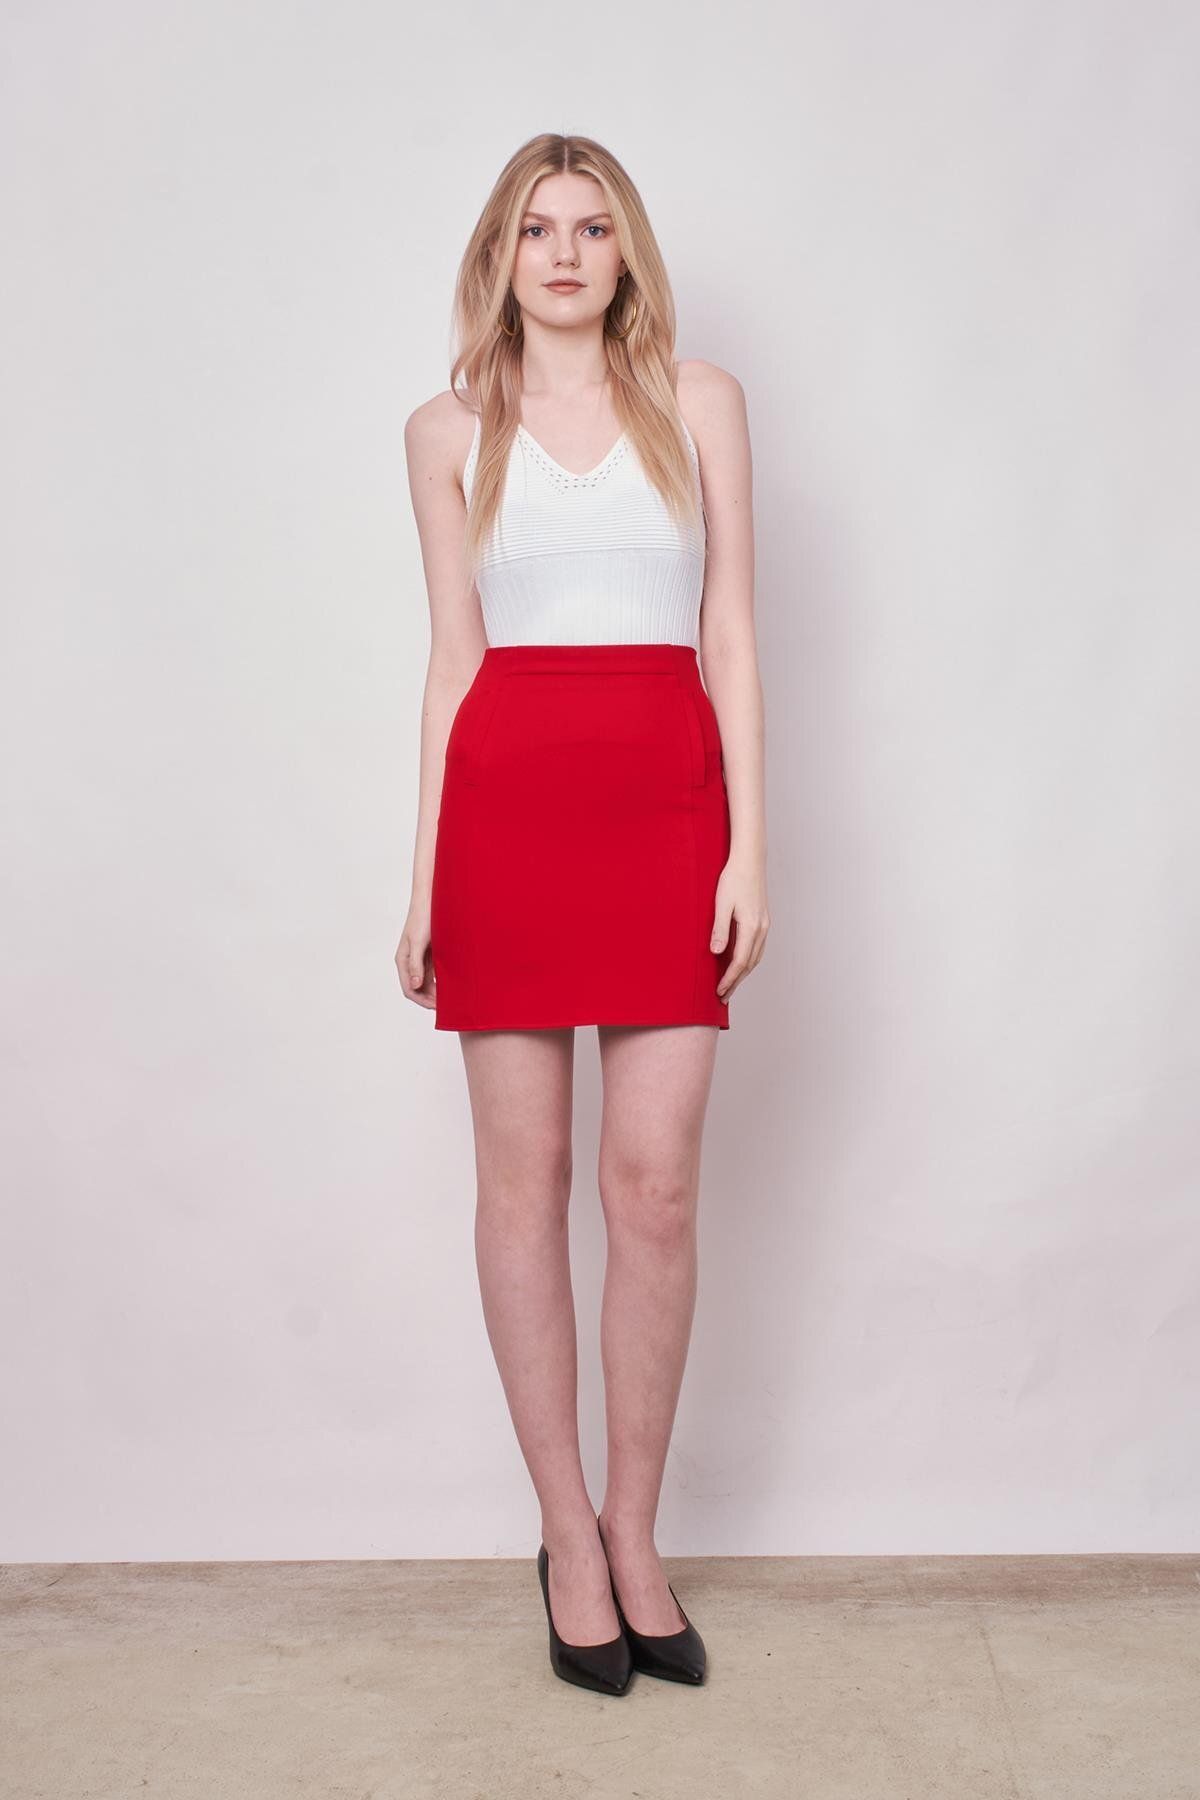 Jument Kadın Yüksek Bel Flato Cep Görüntülü Hafif Likralı Kumaş Kısa Kalem Etek-Kırmızı